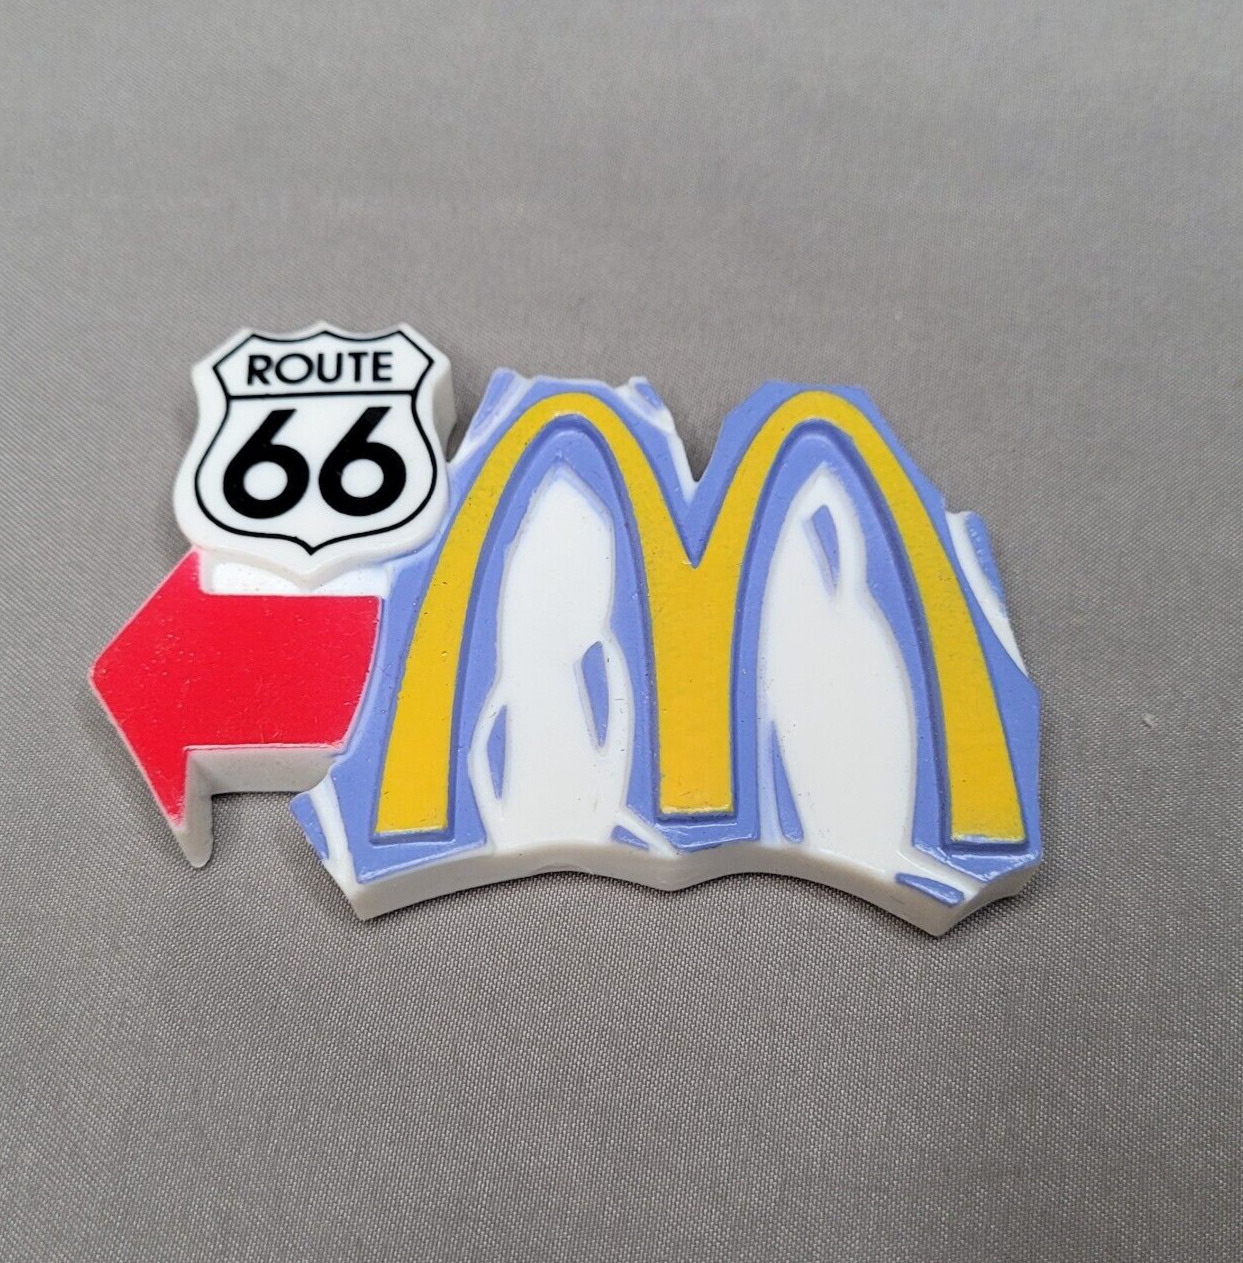 Vintage 1998 McDonalds Route 66 Magnet Retro Golden Arches Collectable Souvenir